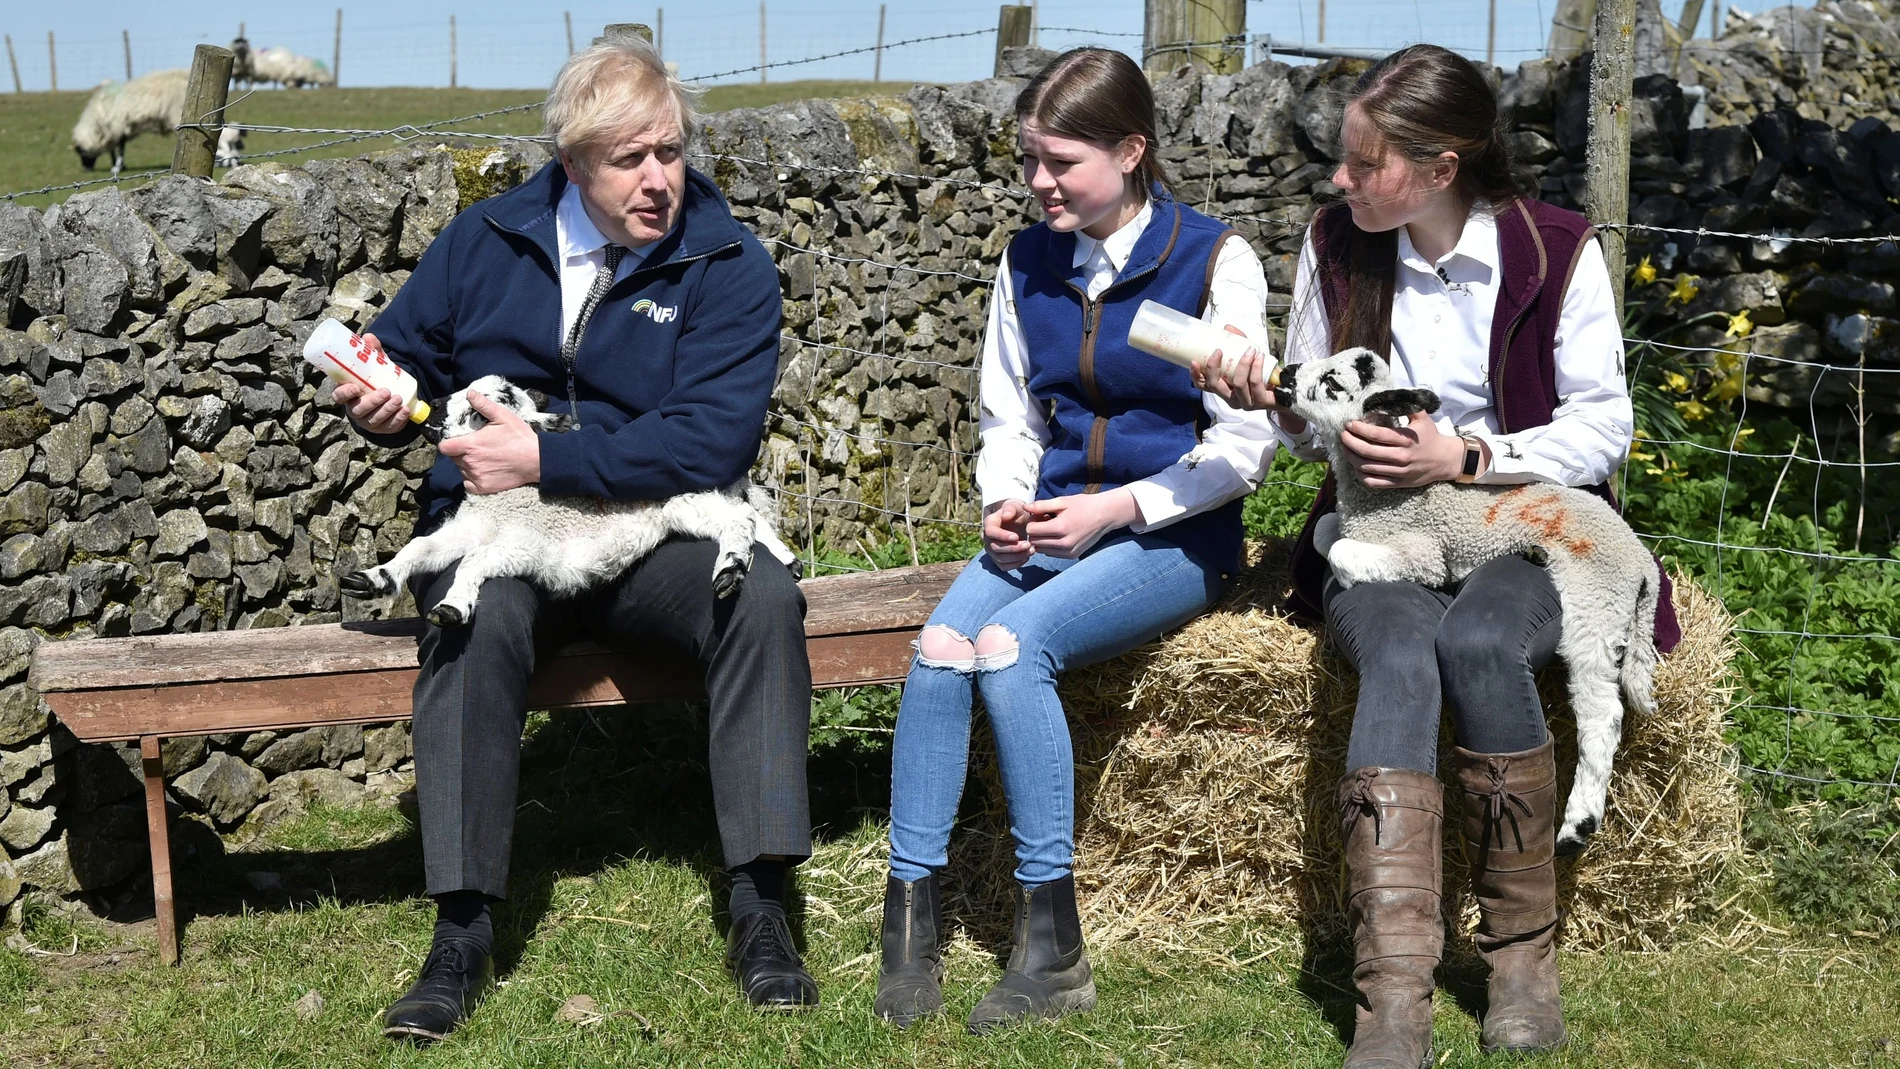 El primer ministro británico, Boris Johnson, da el biberón a un cordero recién nacido junto a dos estudiantes en una granja de Stoney Middleton